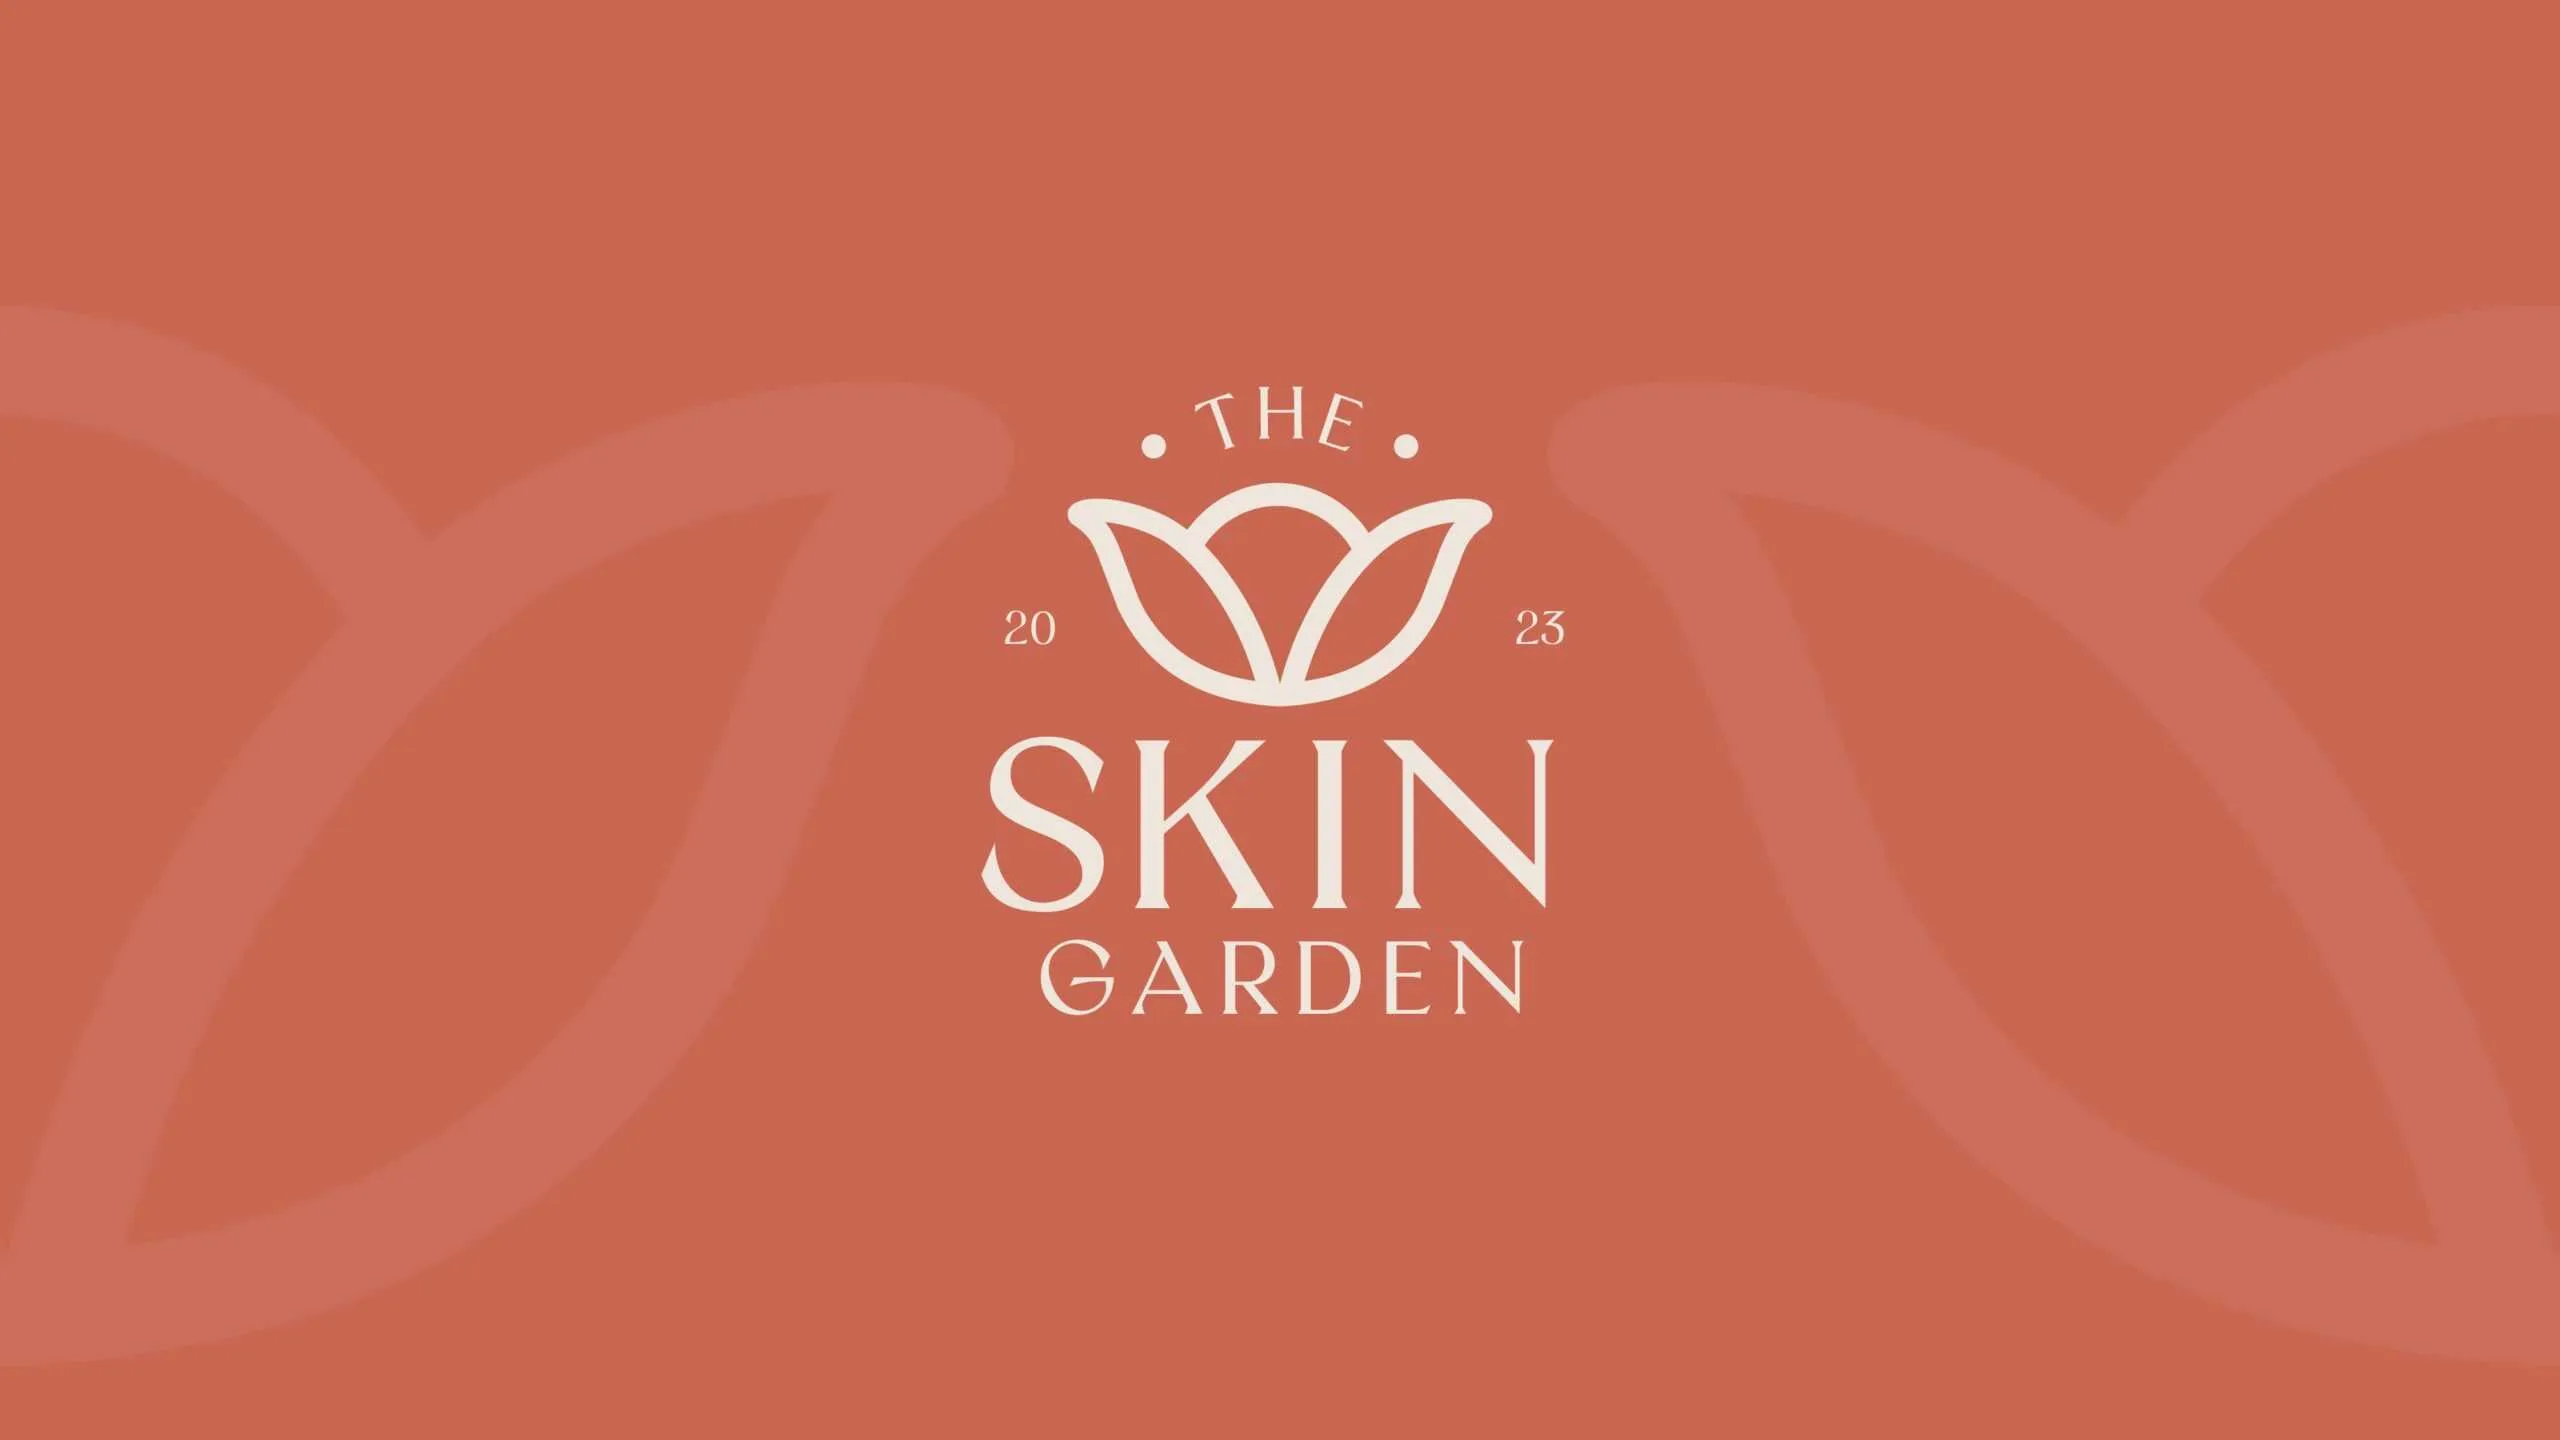 Skin Garden